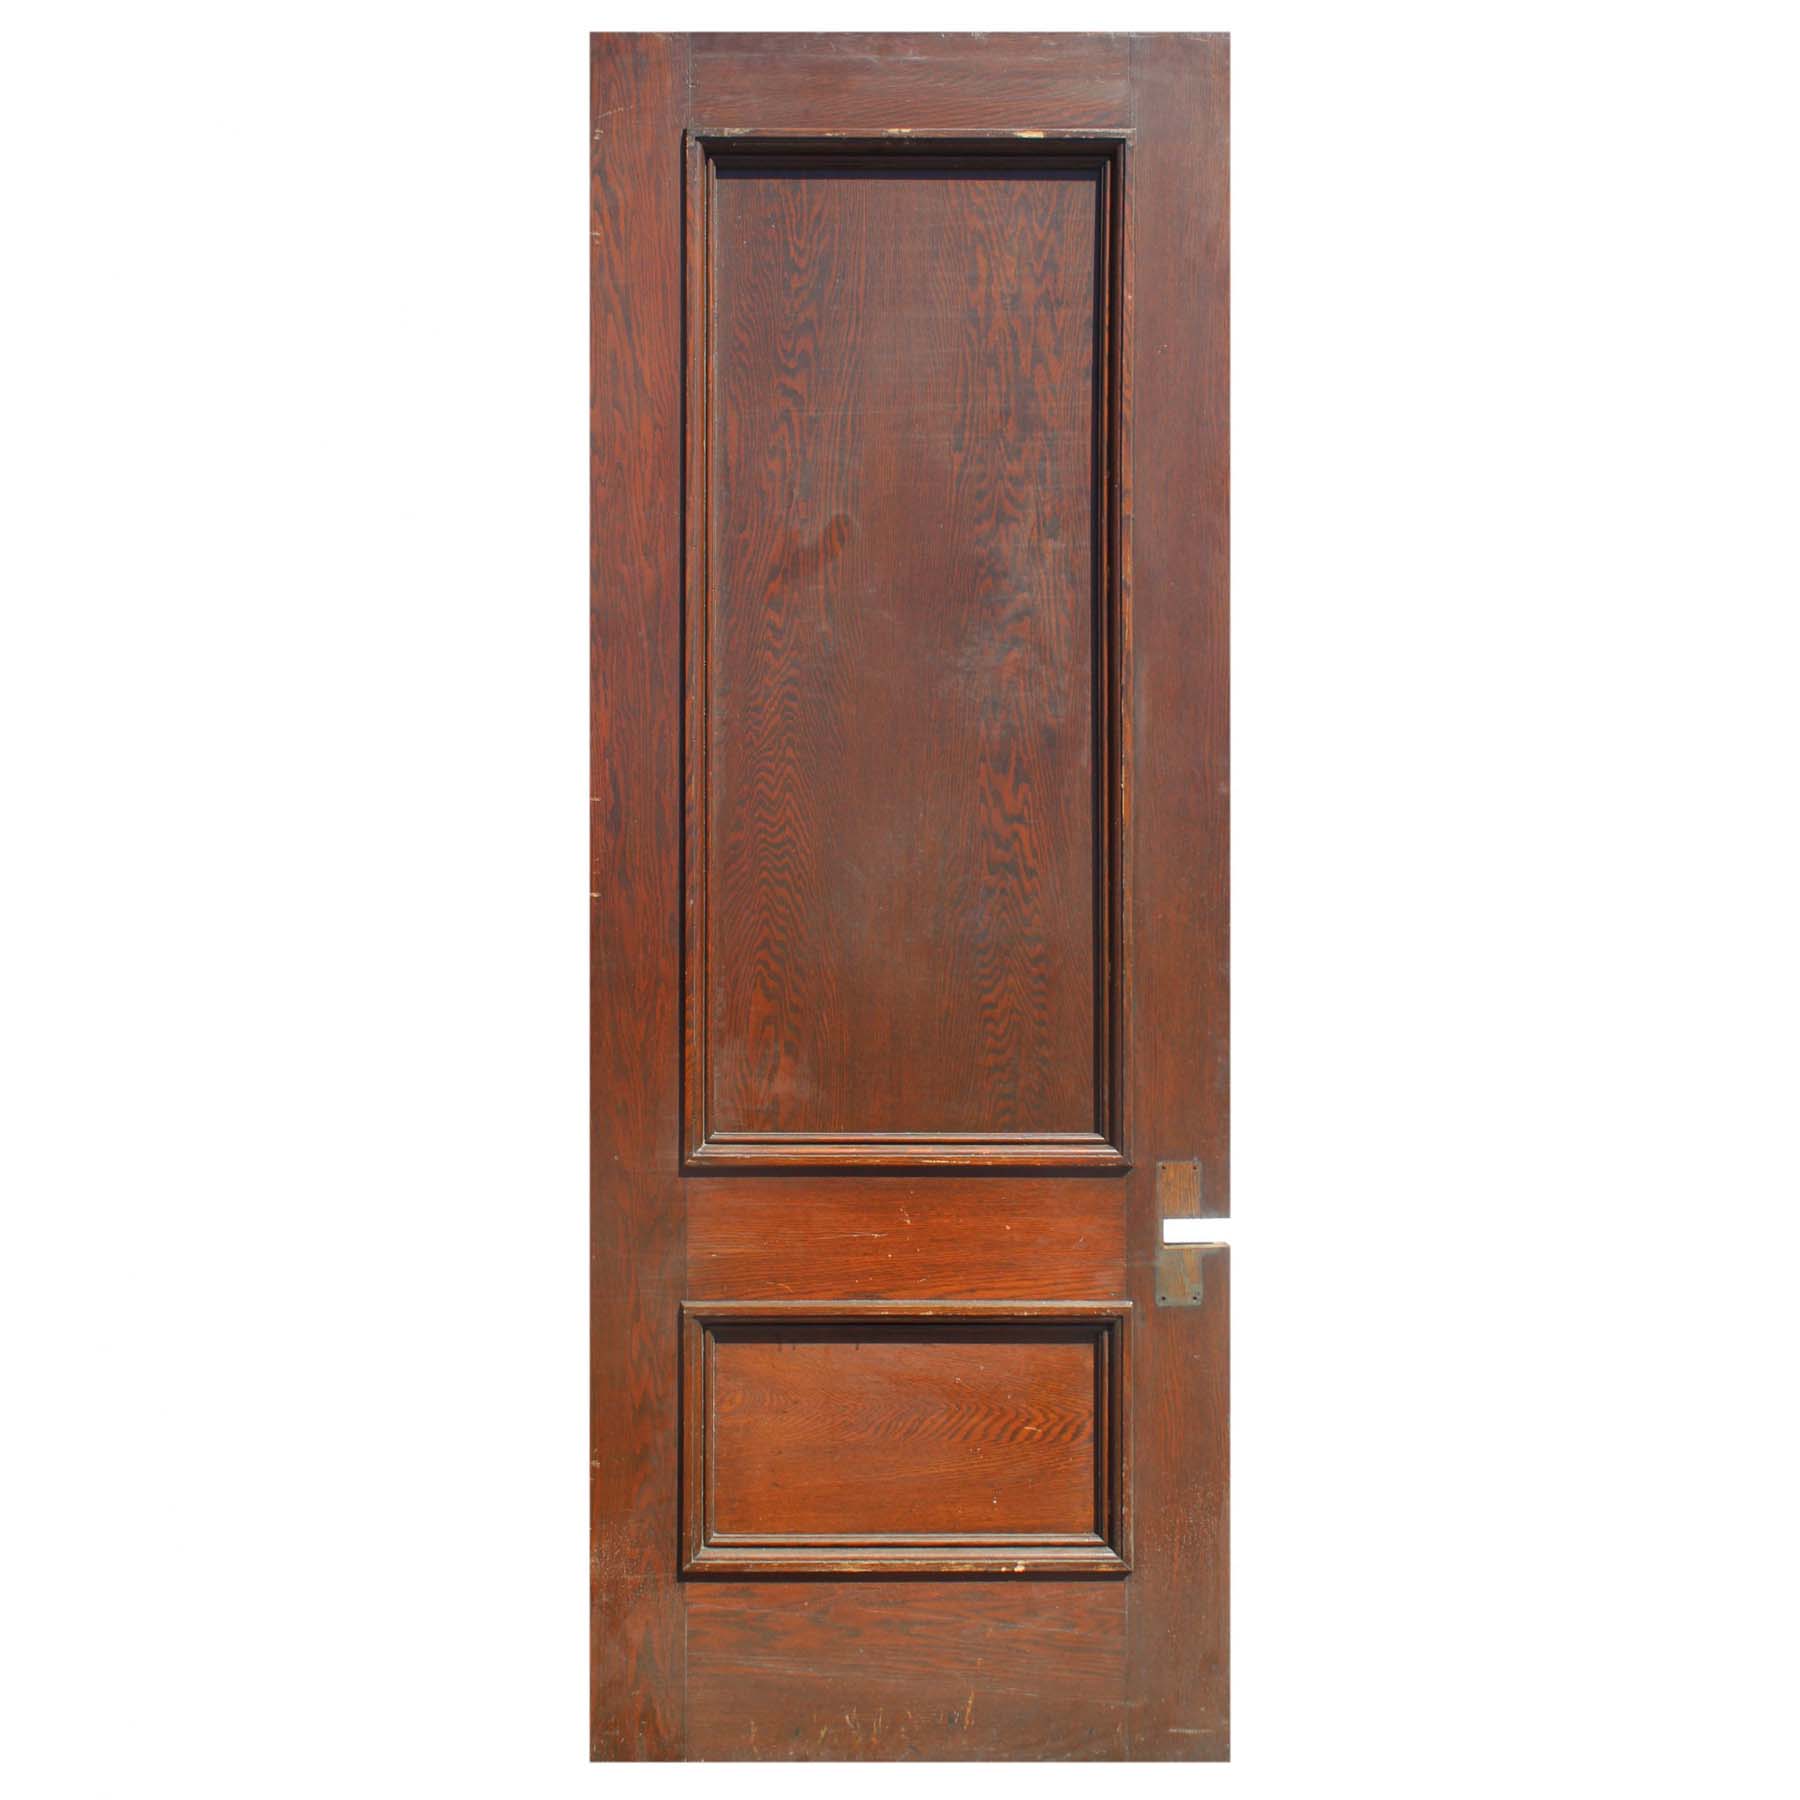 SOLD Salvaged 36” Solid Oak Door -67703